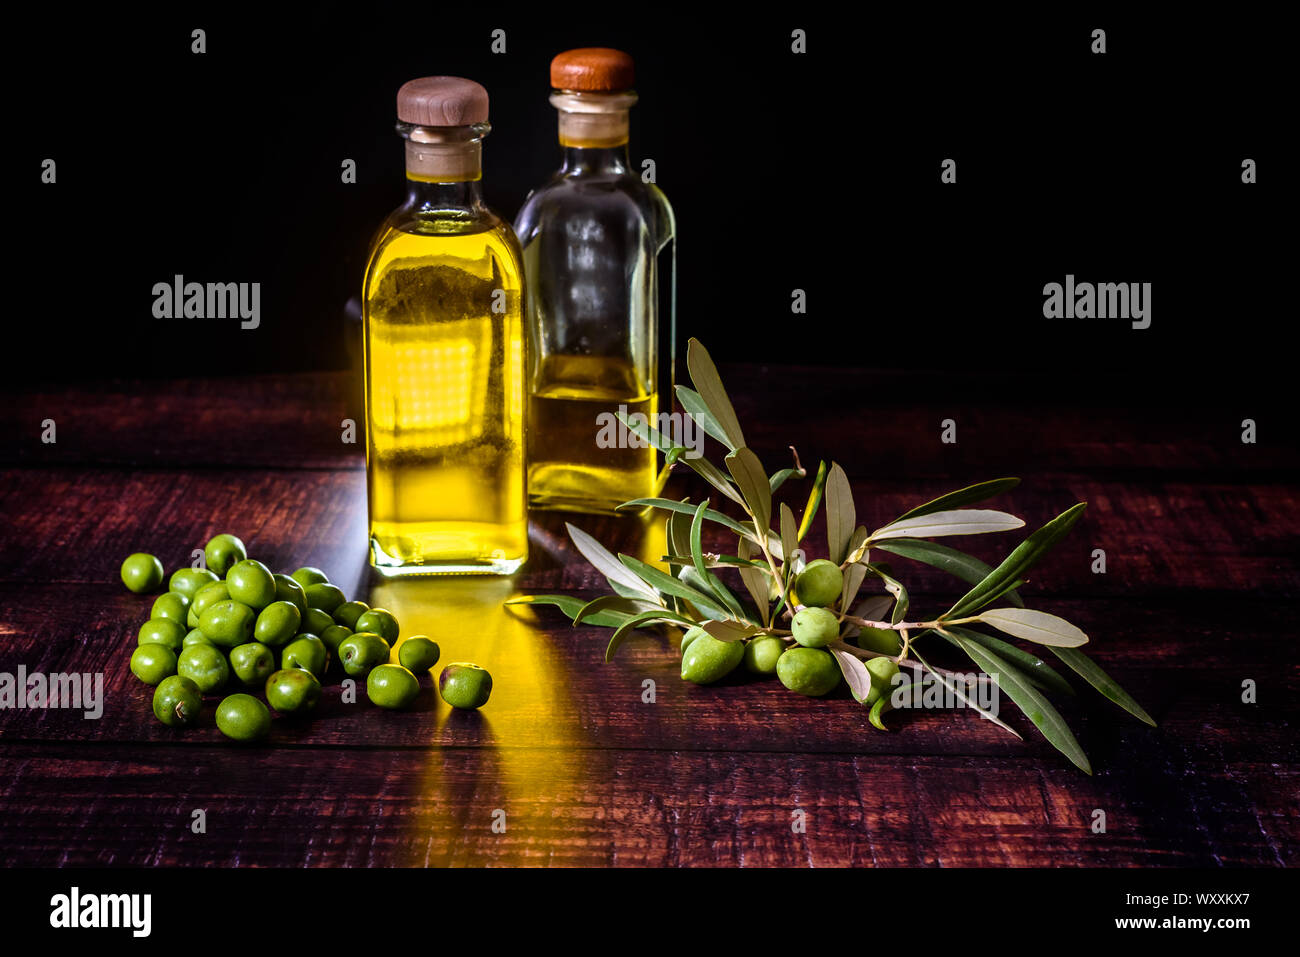 Der Verbrauch von Olivenöl in Mittelmeerländern wie Spanien, Italien oder Griechenland erklärt, gute Gesundheit, zusammen mit einem abwechslungsreichen und natürliche Ernährung. Stockfoto